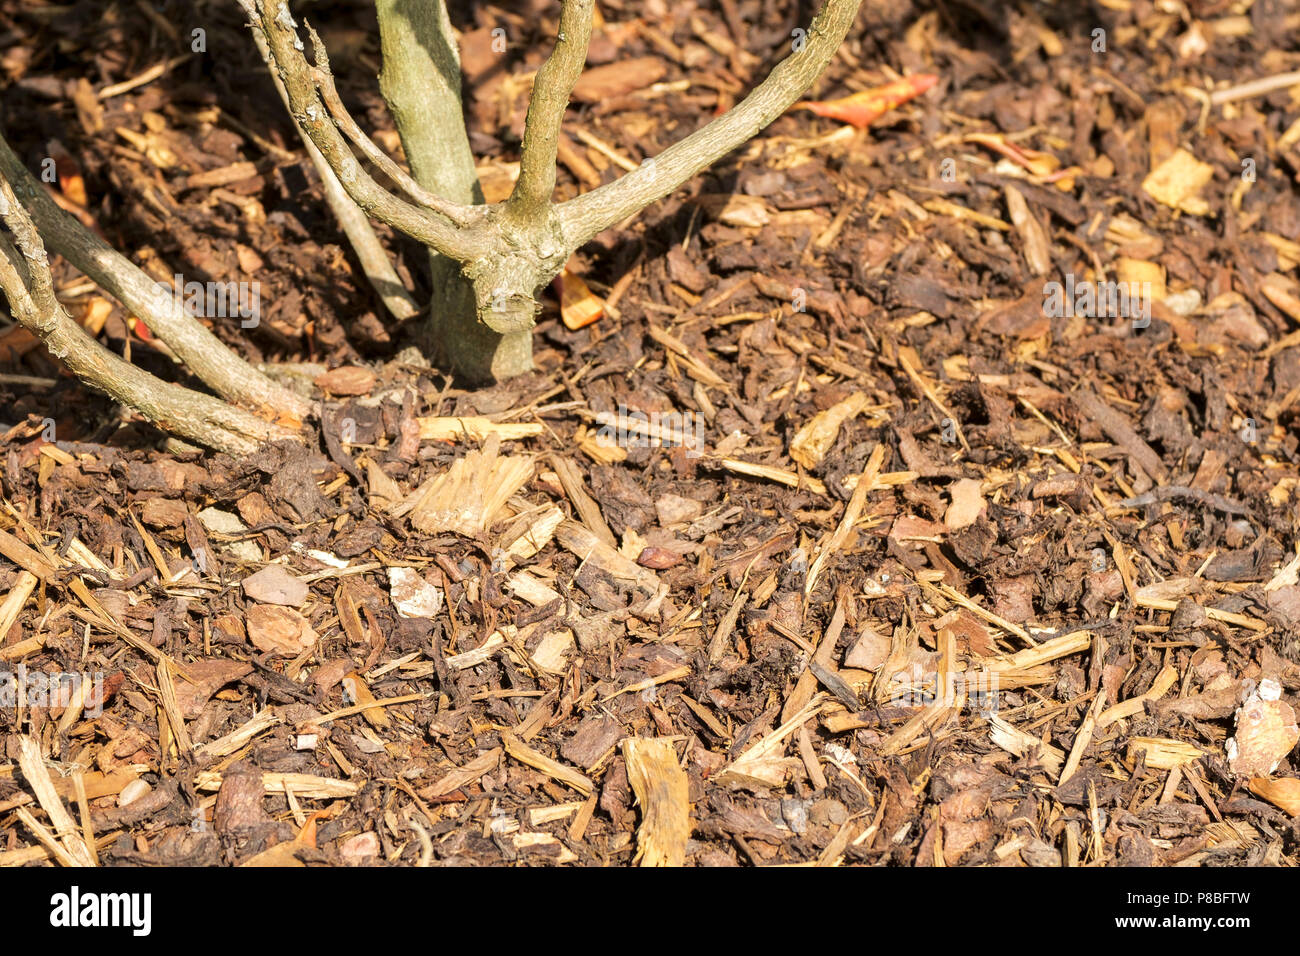 Garden landscaping shredded bark around the stem of a shrub Stock Photo